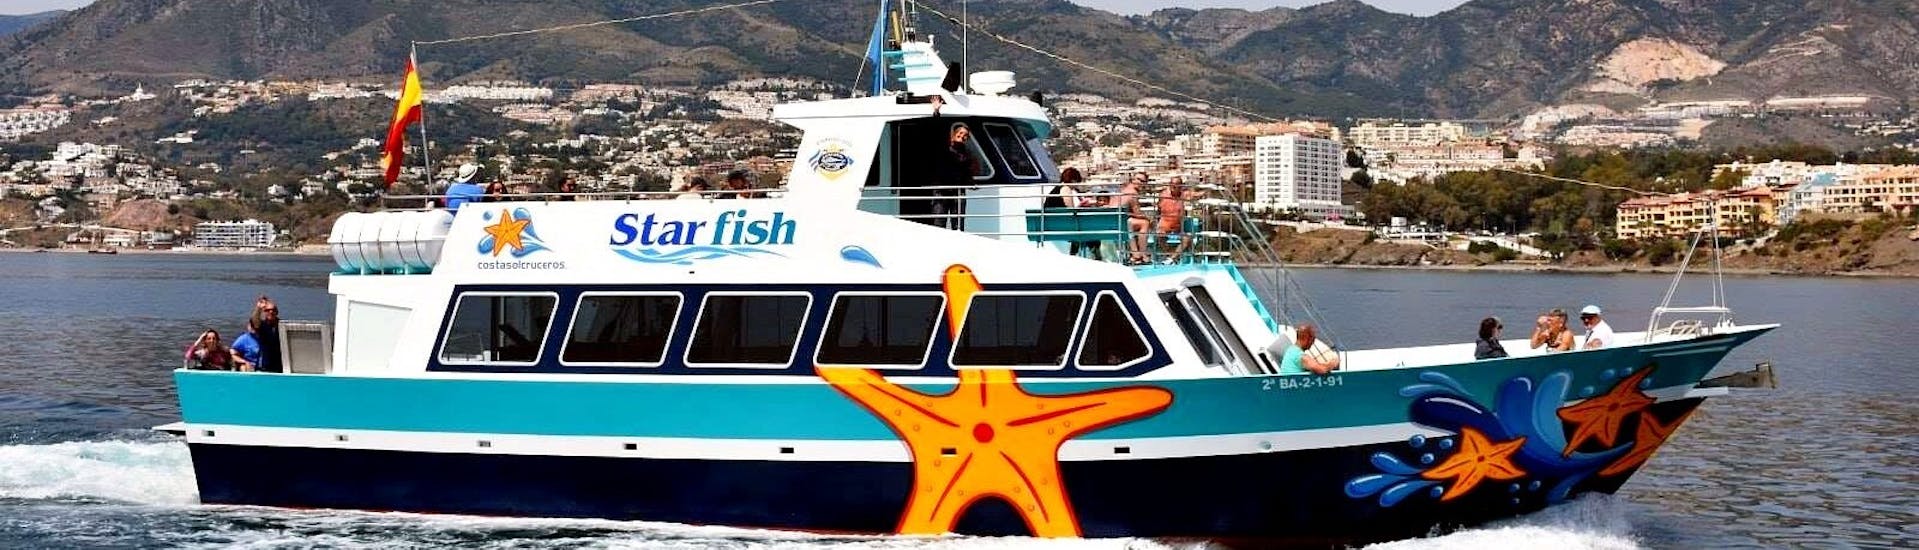 Le ferry Starfish Two naviguant sur les magnifiques eaux bleues de la Méditerranée lors d'un transfert en bateau entre Benalmádena et Fuengirola avec Costasol Cruceros.